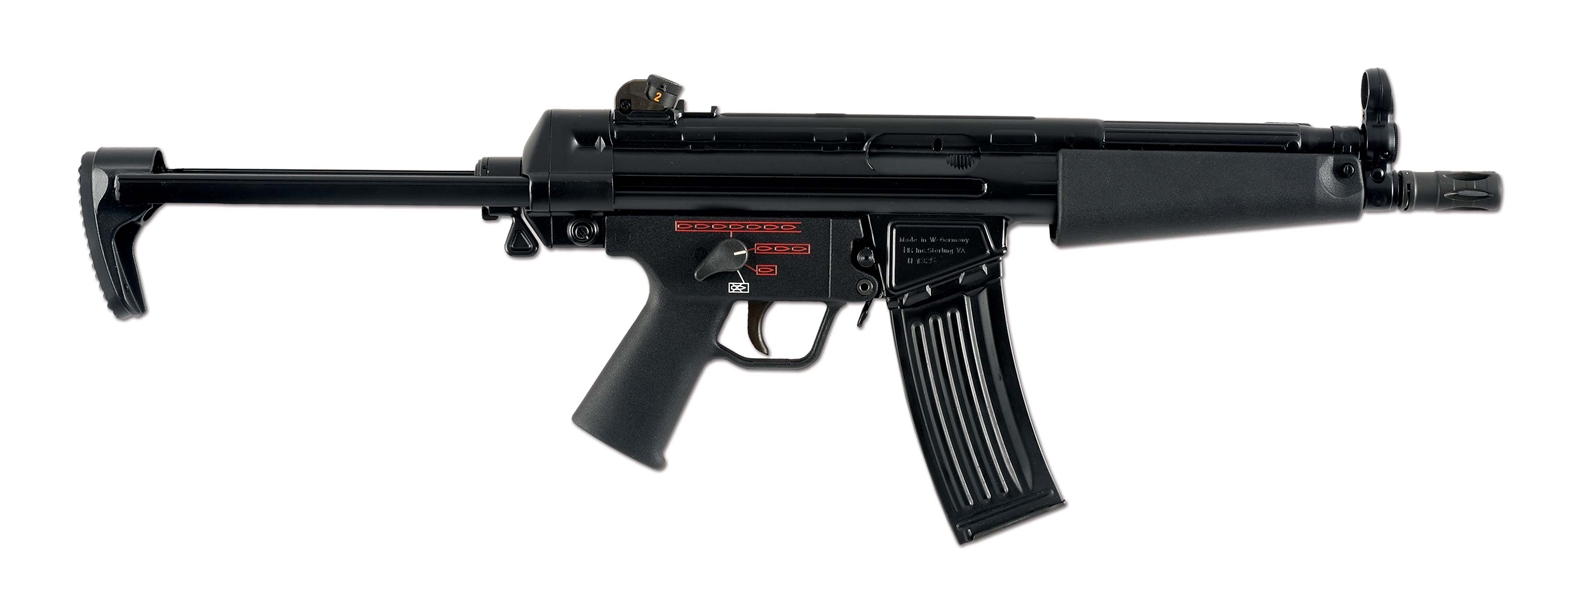 (N) FOUR POSITION HECKLER & KOCH MACHINE GUN AUTO SEAR KIT ON H & K MODEL 53 HOST GUN (FULLY TRANSFERABLE) 